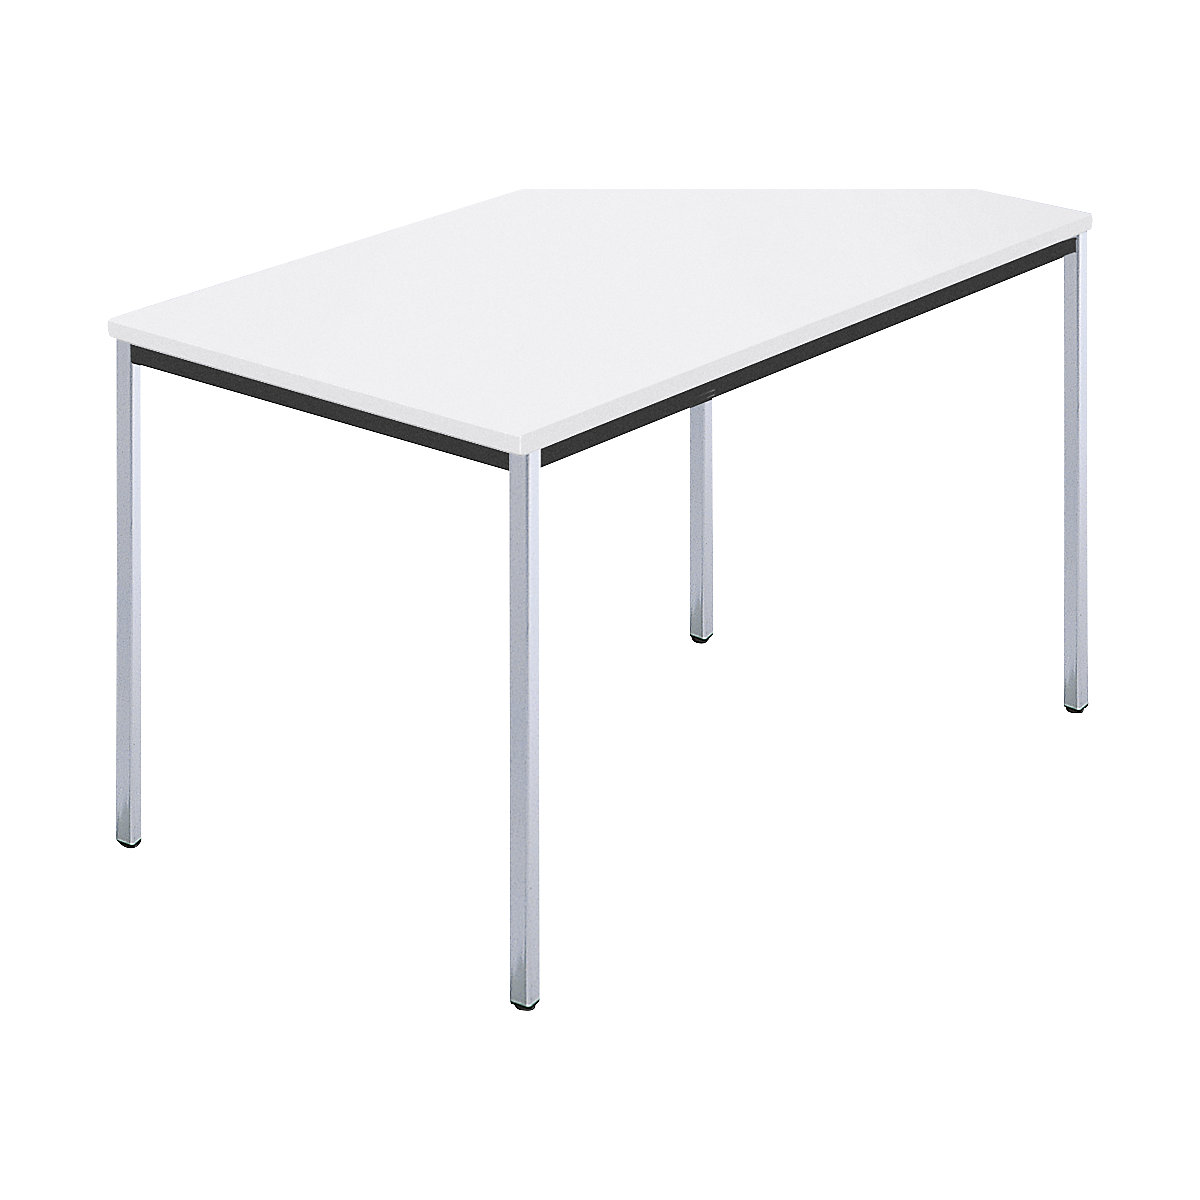 Pravokutni stol, kromirana četverokutna cijev, ŠxD 1200 x 800 mm, u bijeloj boji-6